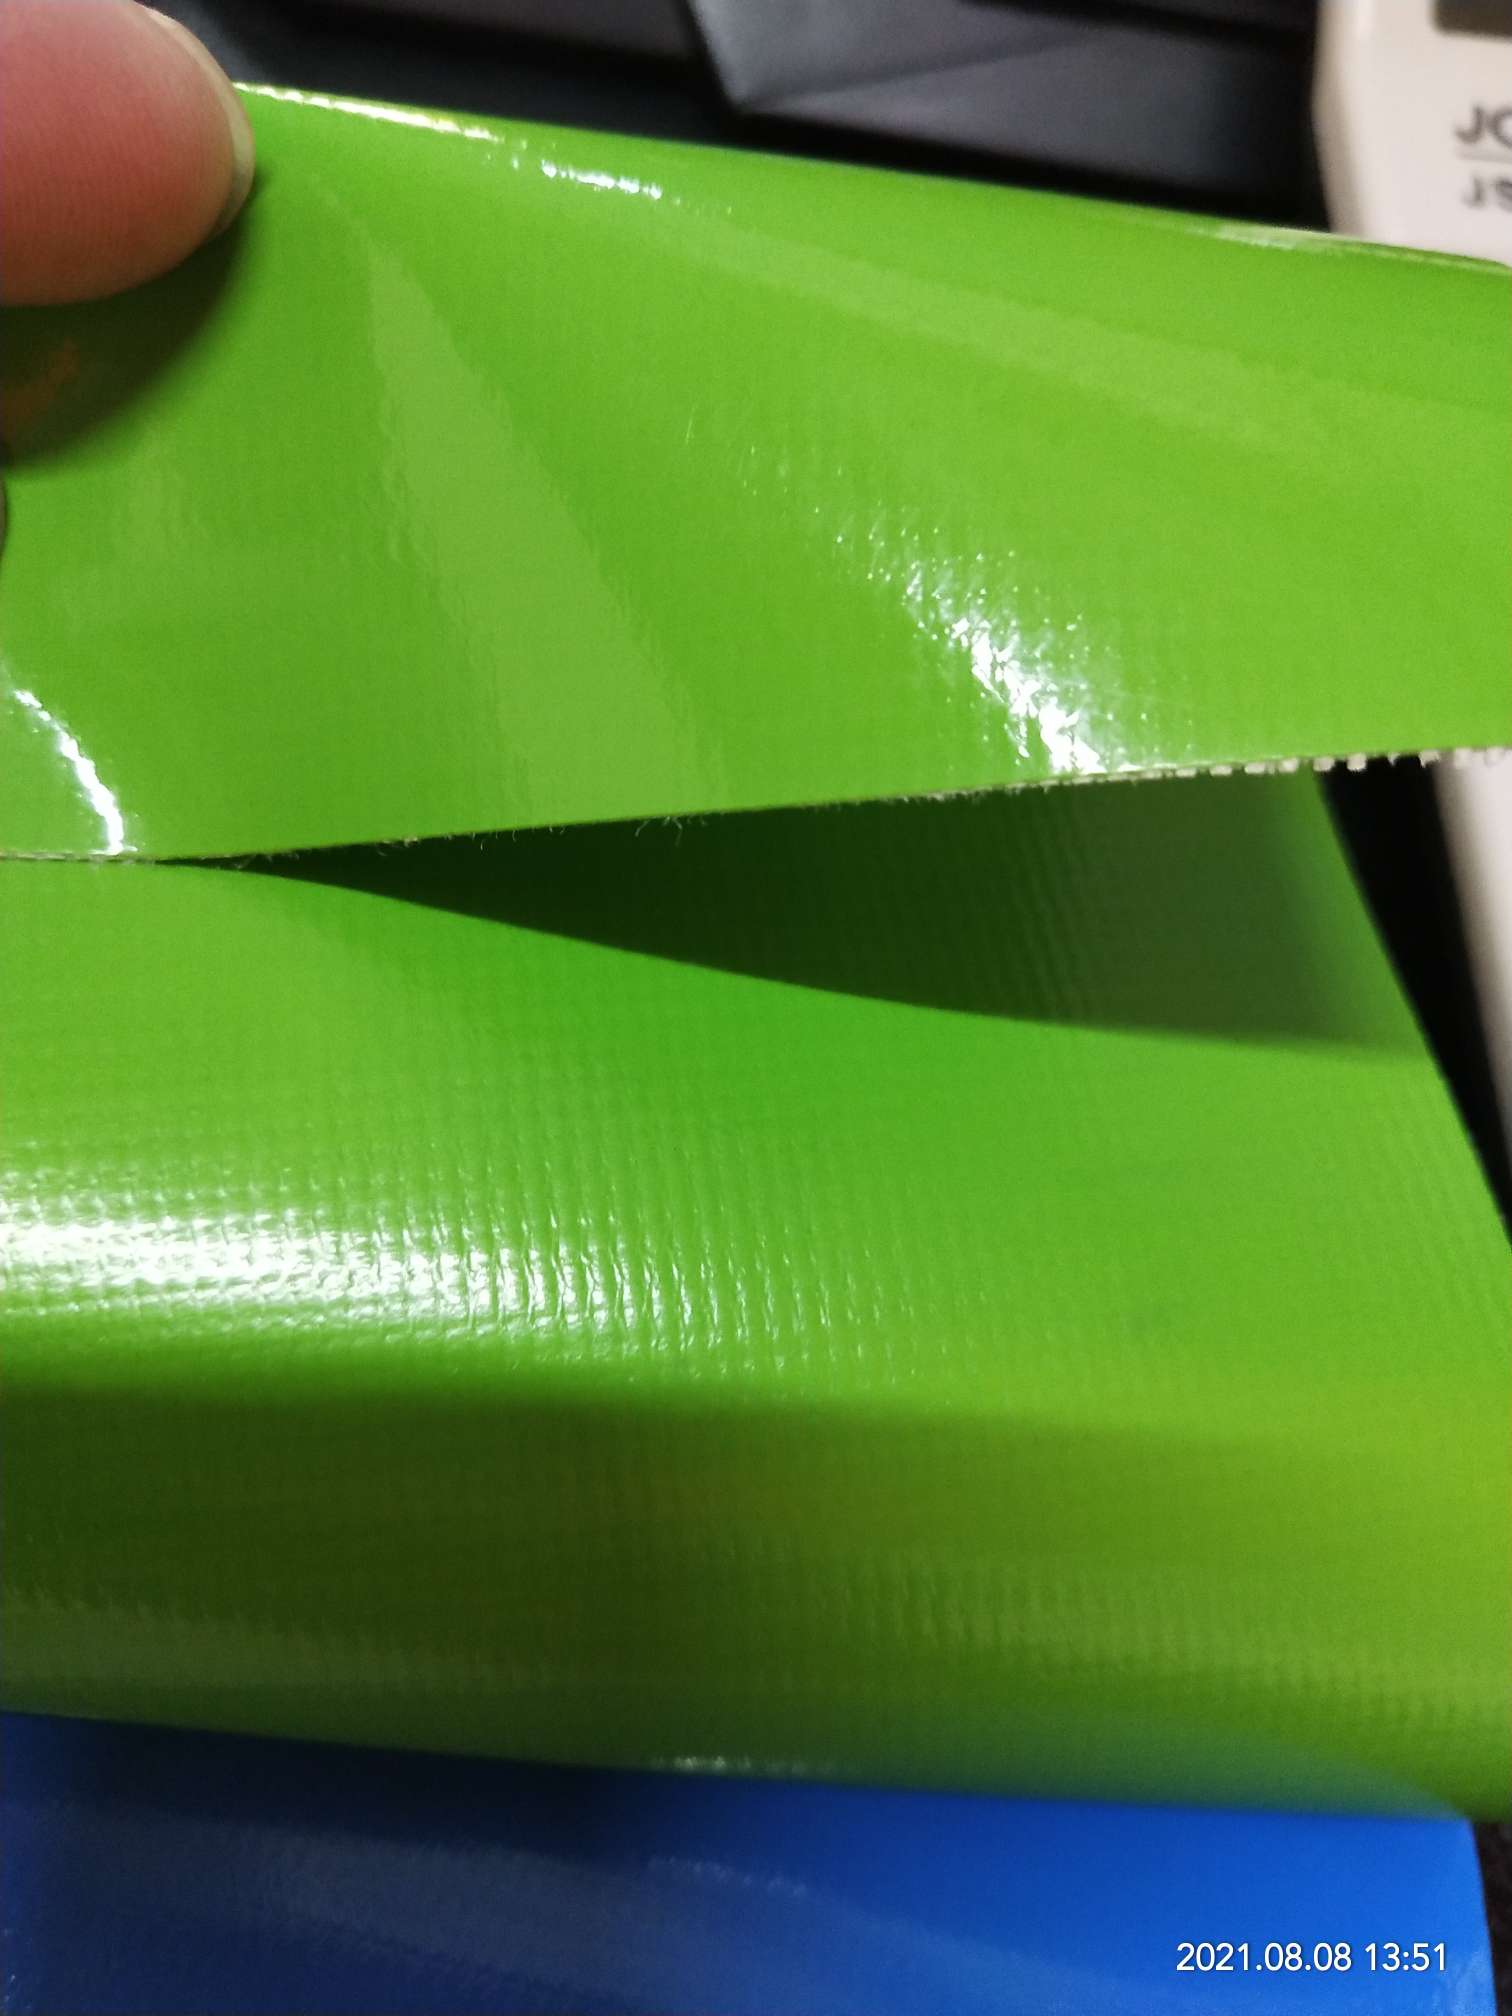 优质光面0.47mm厚浅绿色PVC夹网布  箱包布  机器罩家具罩  体育游乐产品  格种箱包袋专用面料详情图3